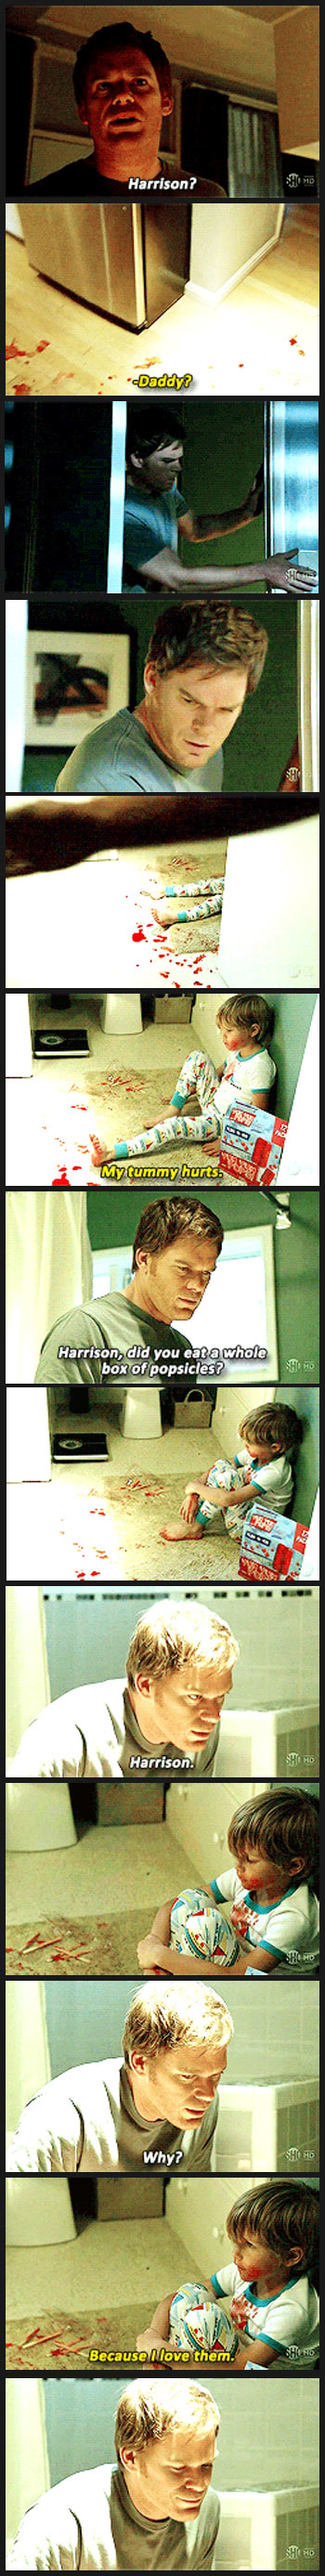 Dexter freaks out…